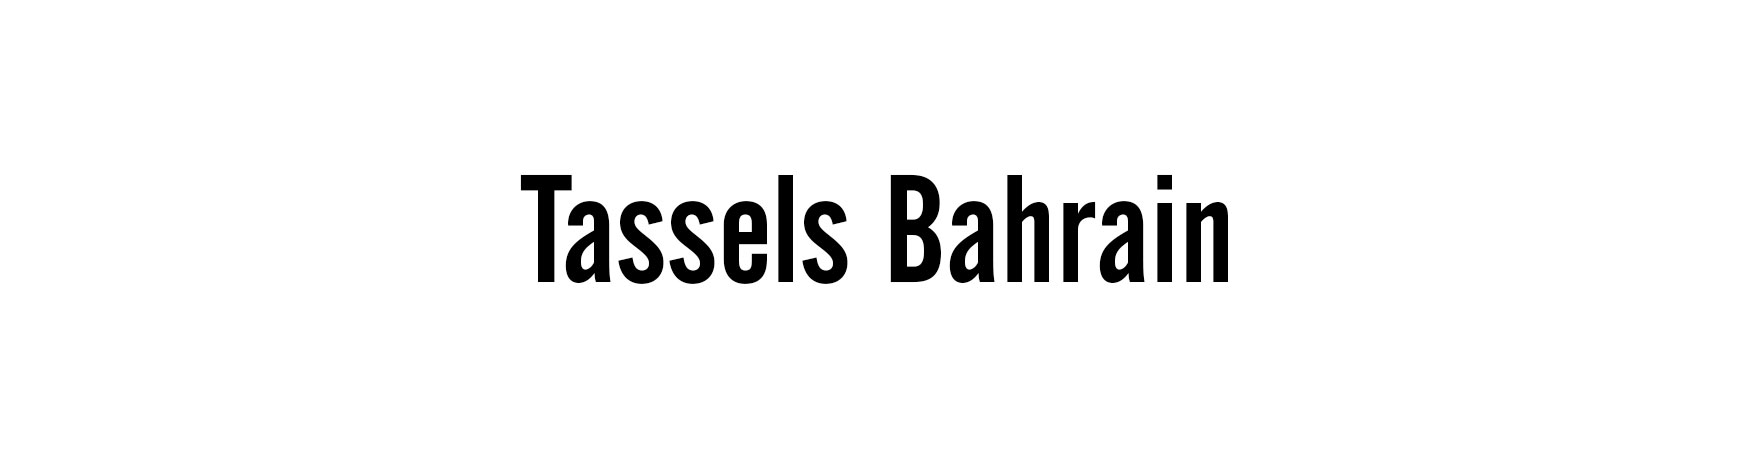 Tassels Bahrain